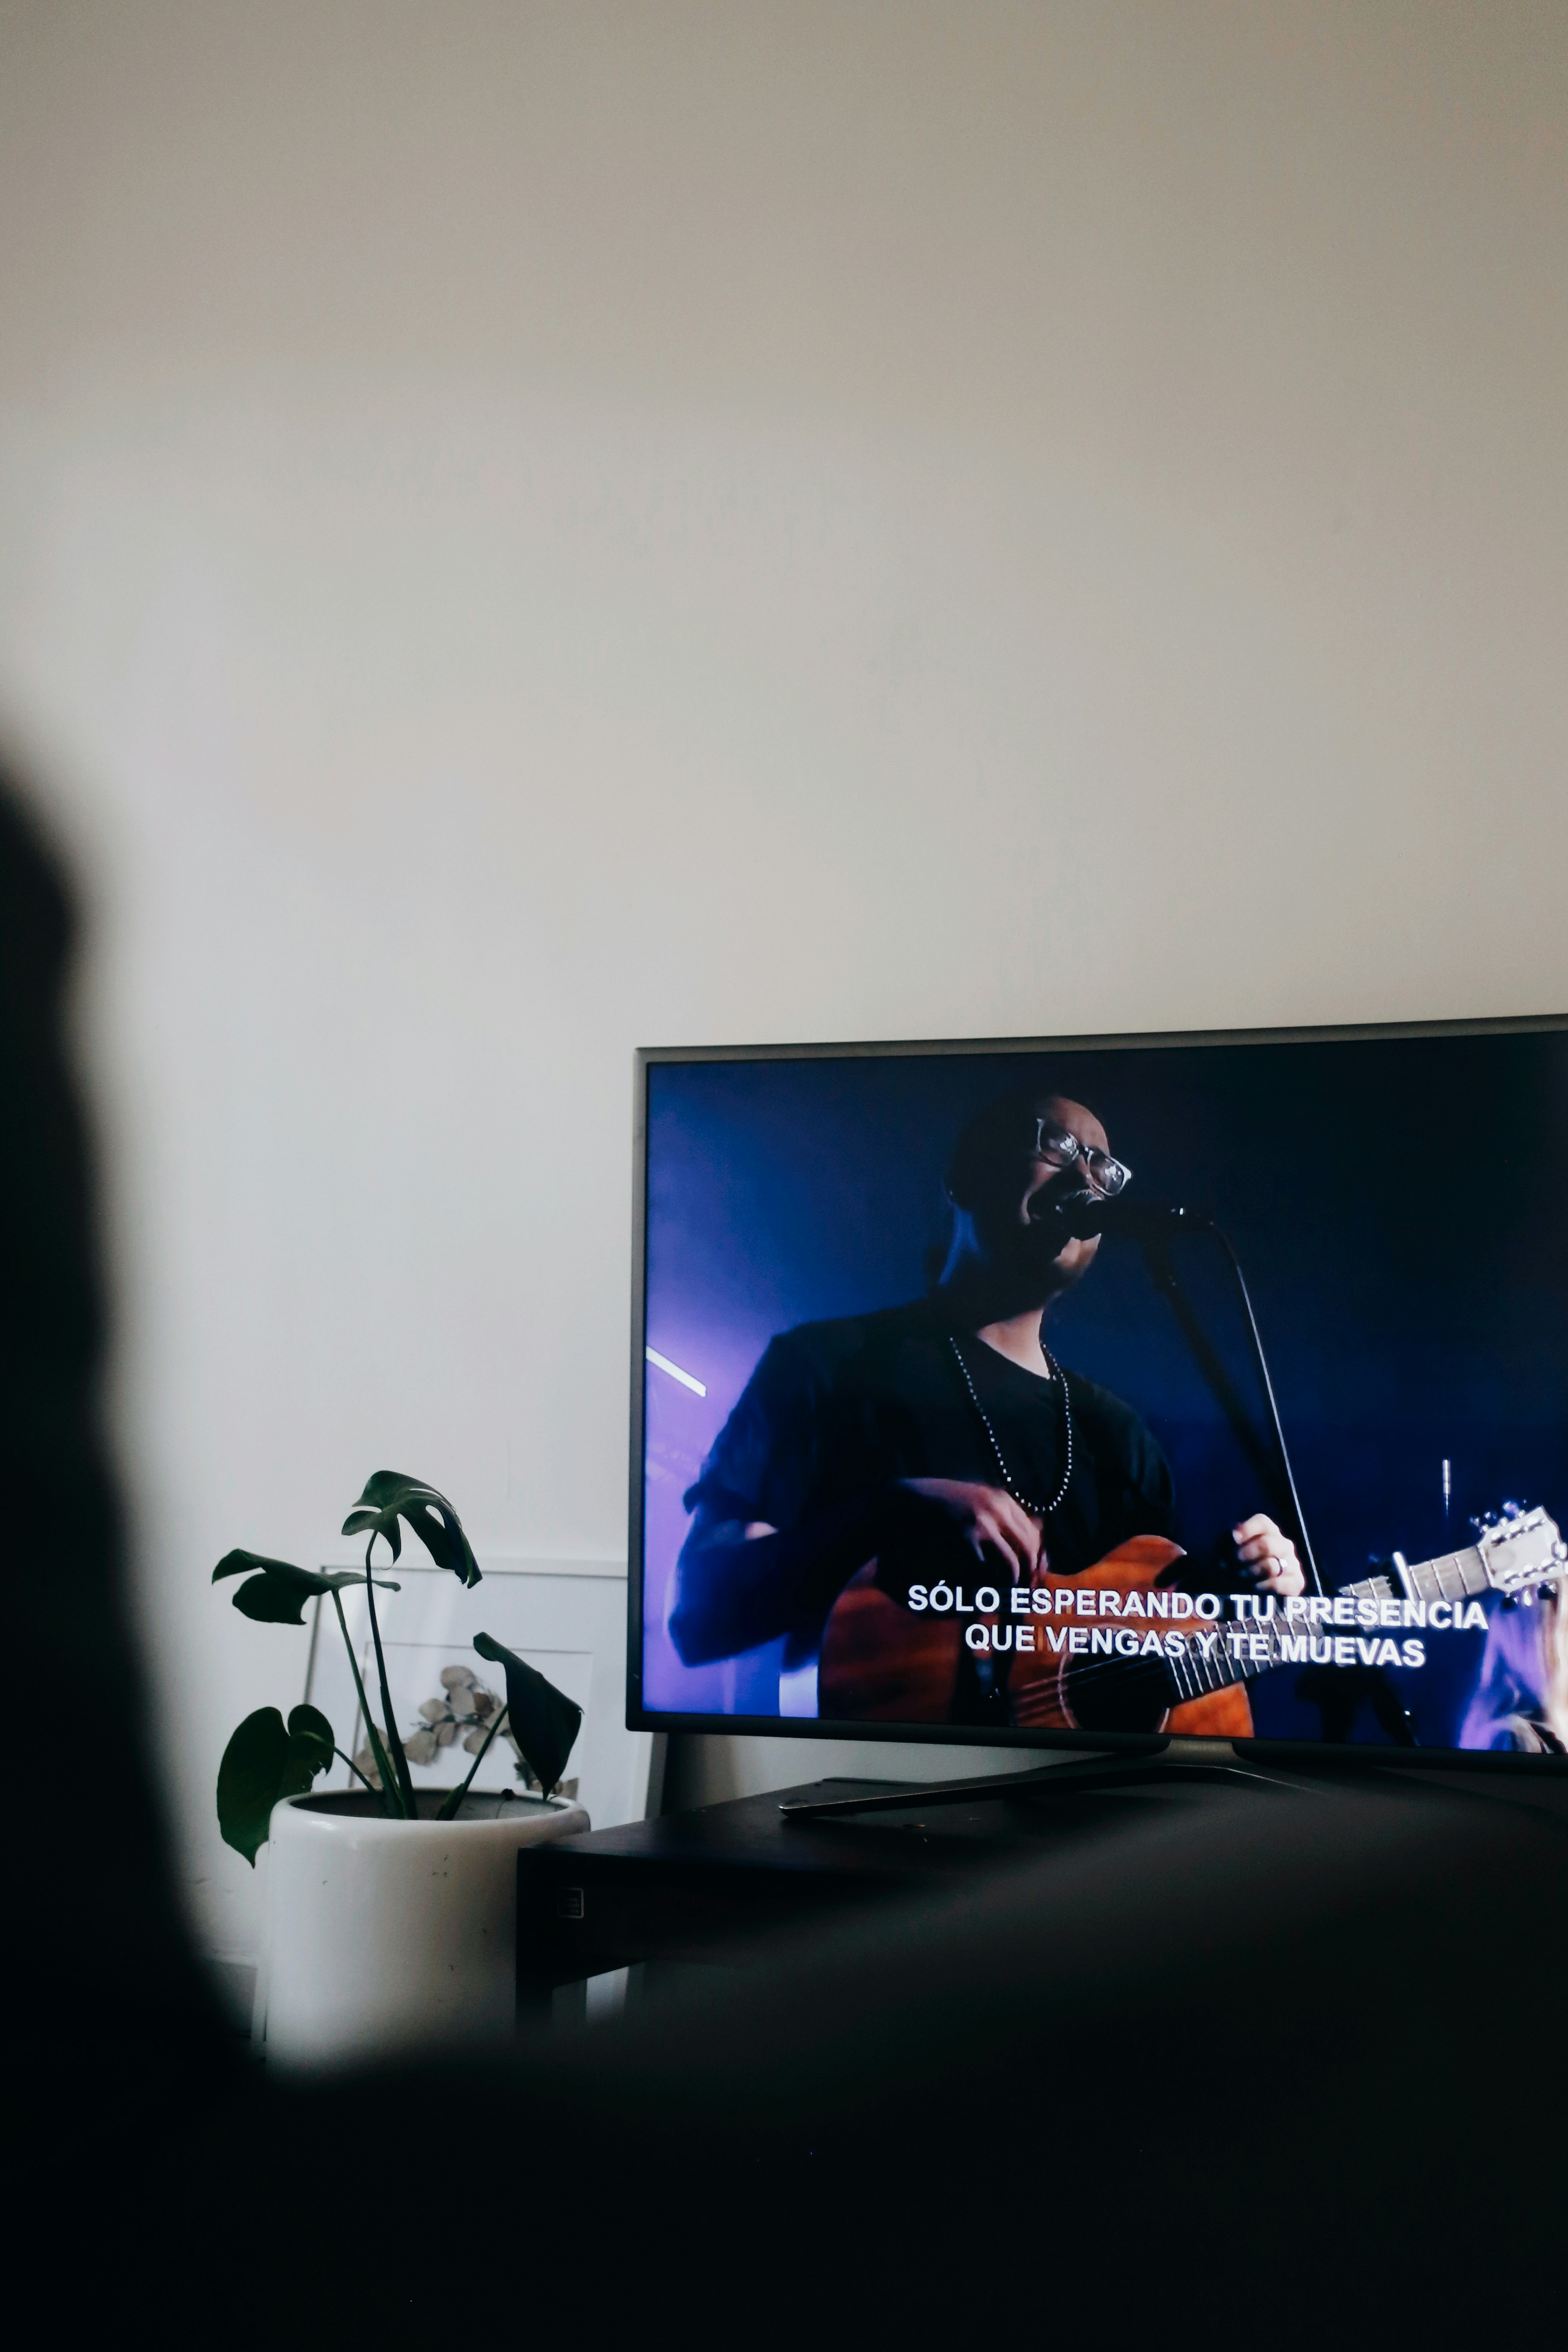 black flat screen tv turned on displaying man playing guitar